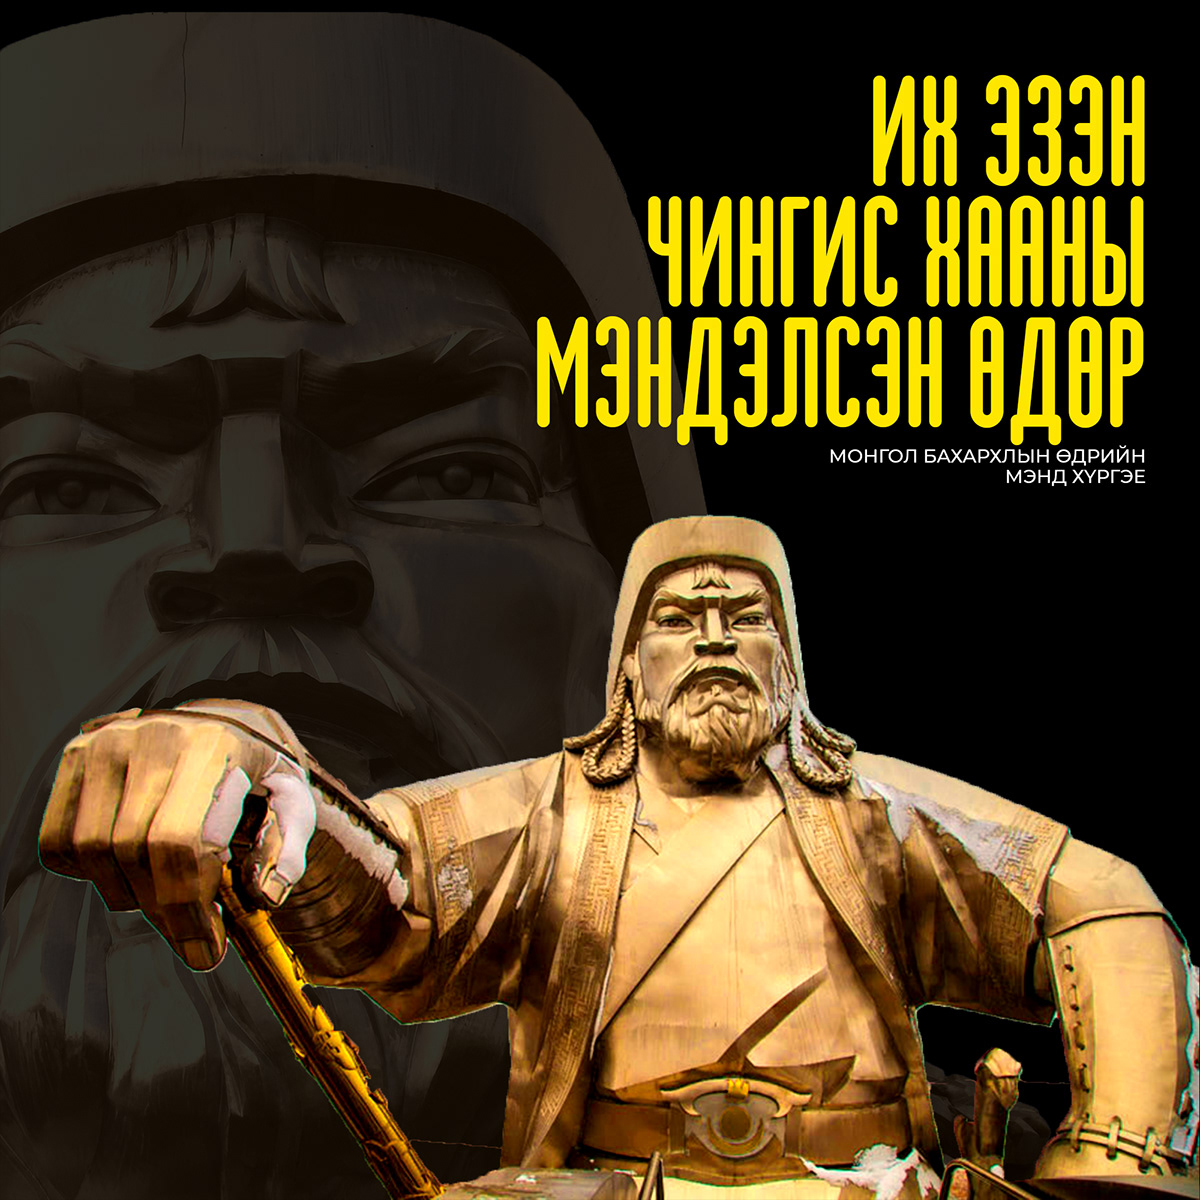 Genghis Khan mongolia